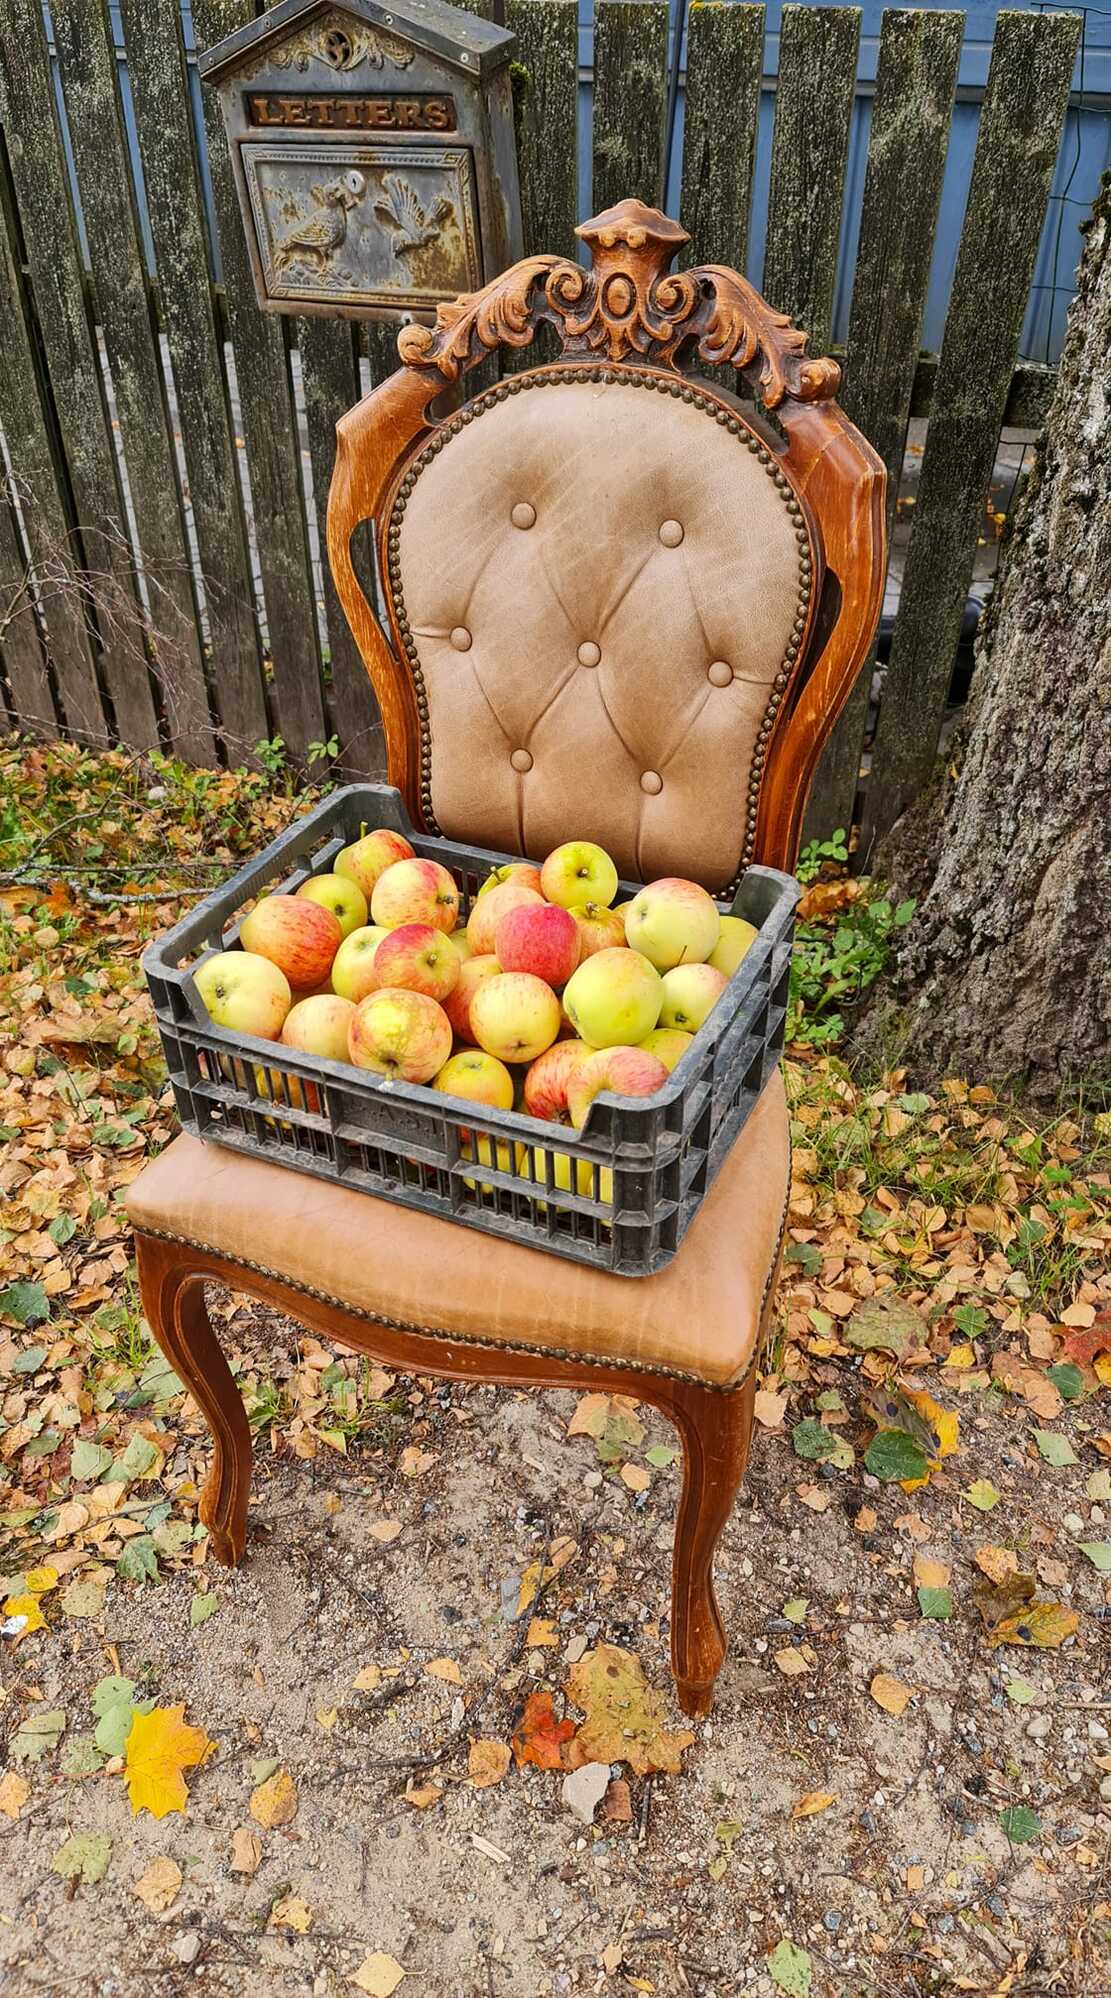 Kanepis Kooli tänaval läks tasuta pakutud õunte asemel loosi hoopiski väljapanekuks kasutatud tool. Nii jäeti õunad korviga maha ja viidi kaasa omapärase välimusega mööblitükk. Foto: ERAKOGU